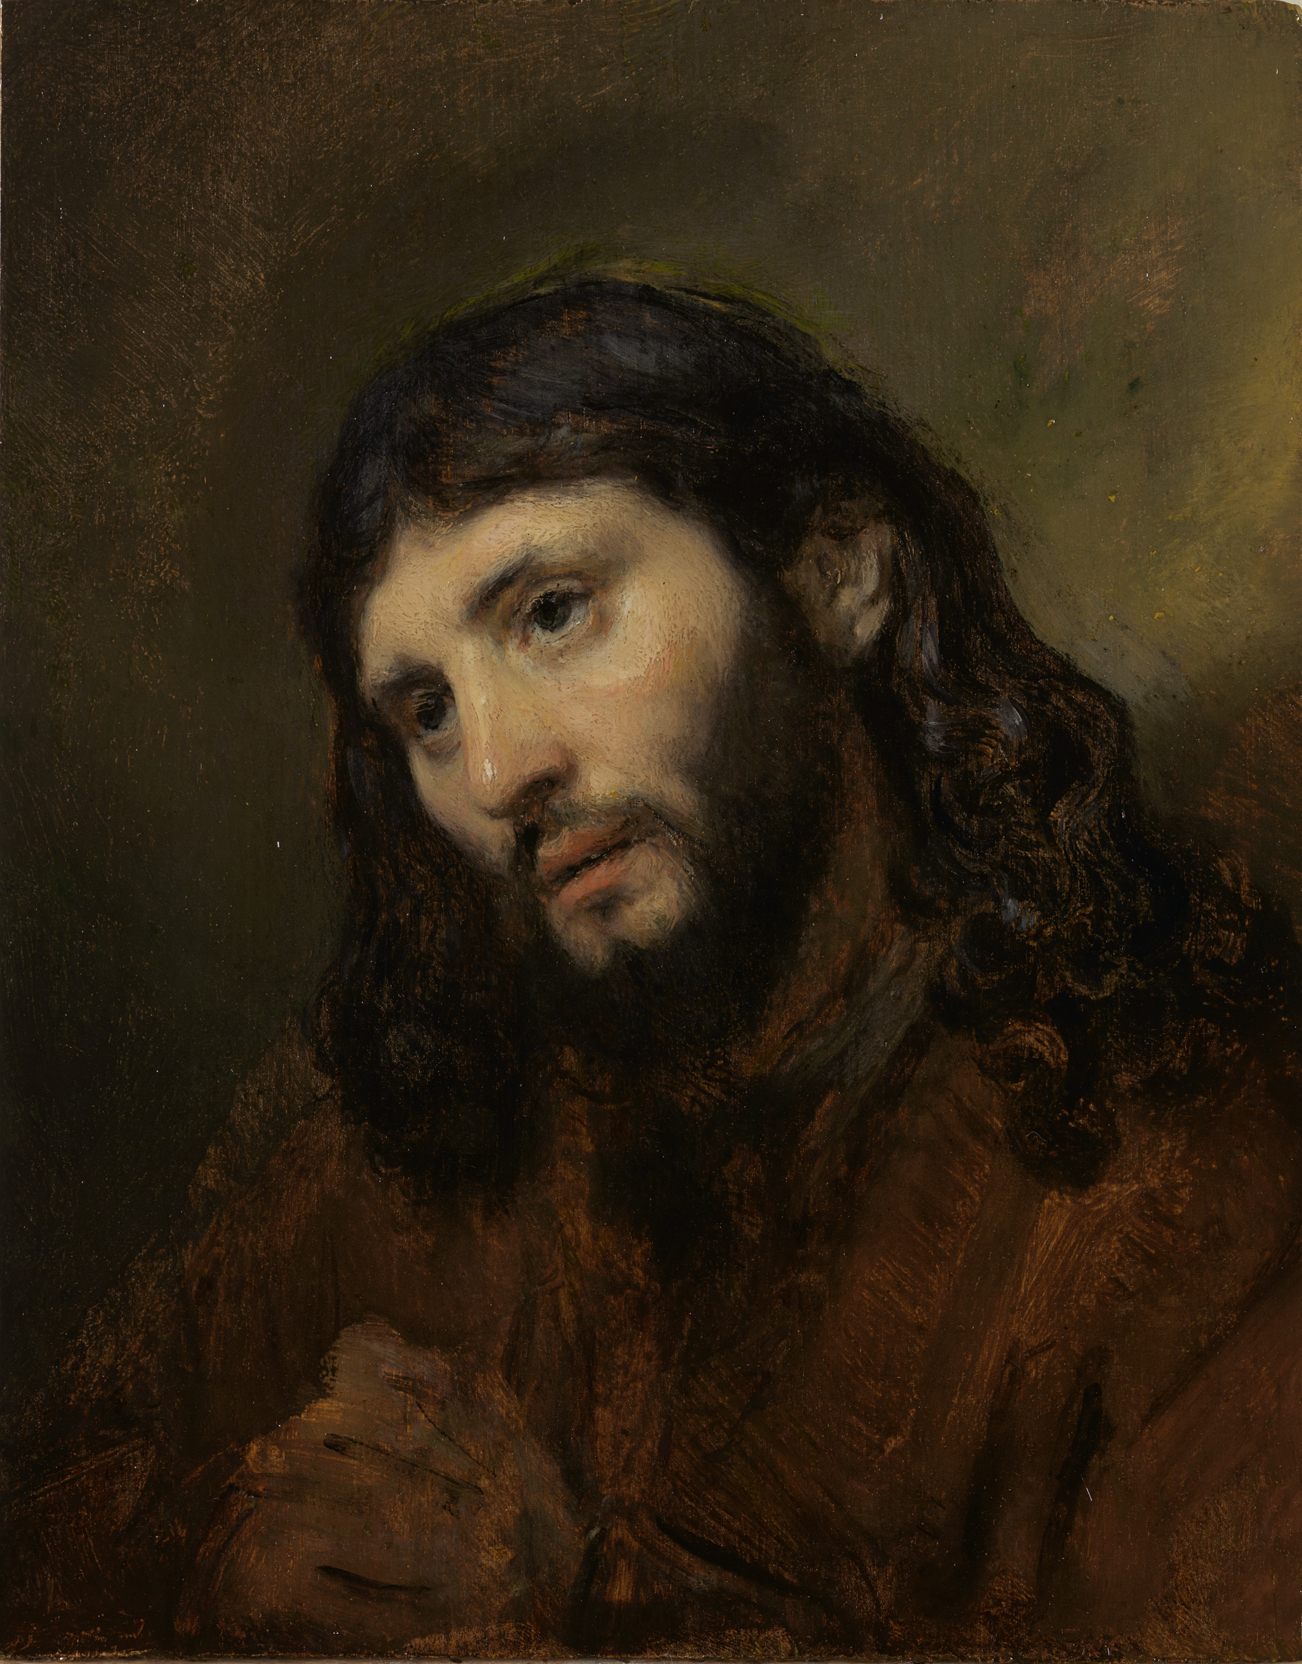 Volto di Cristo by Rembrandt van Rijn - 1648 Rembrandthuis